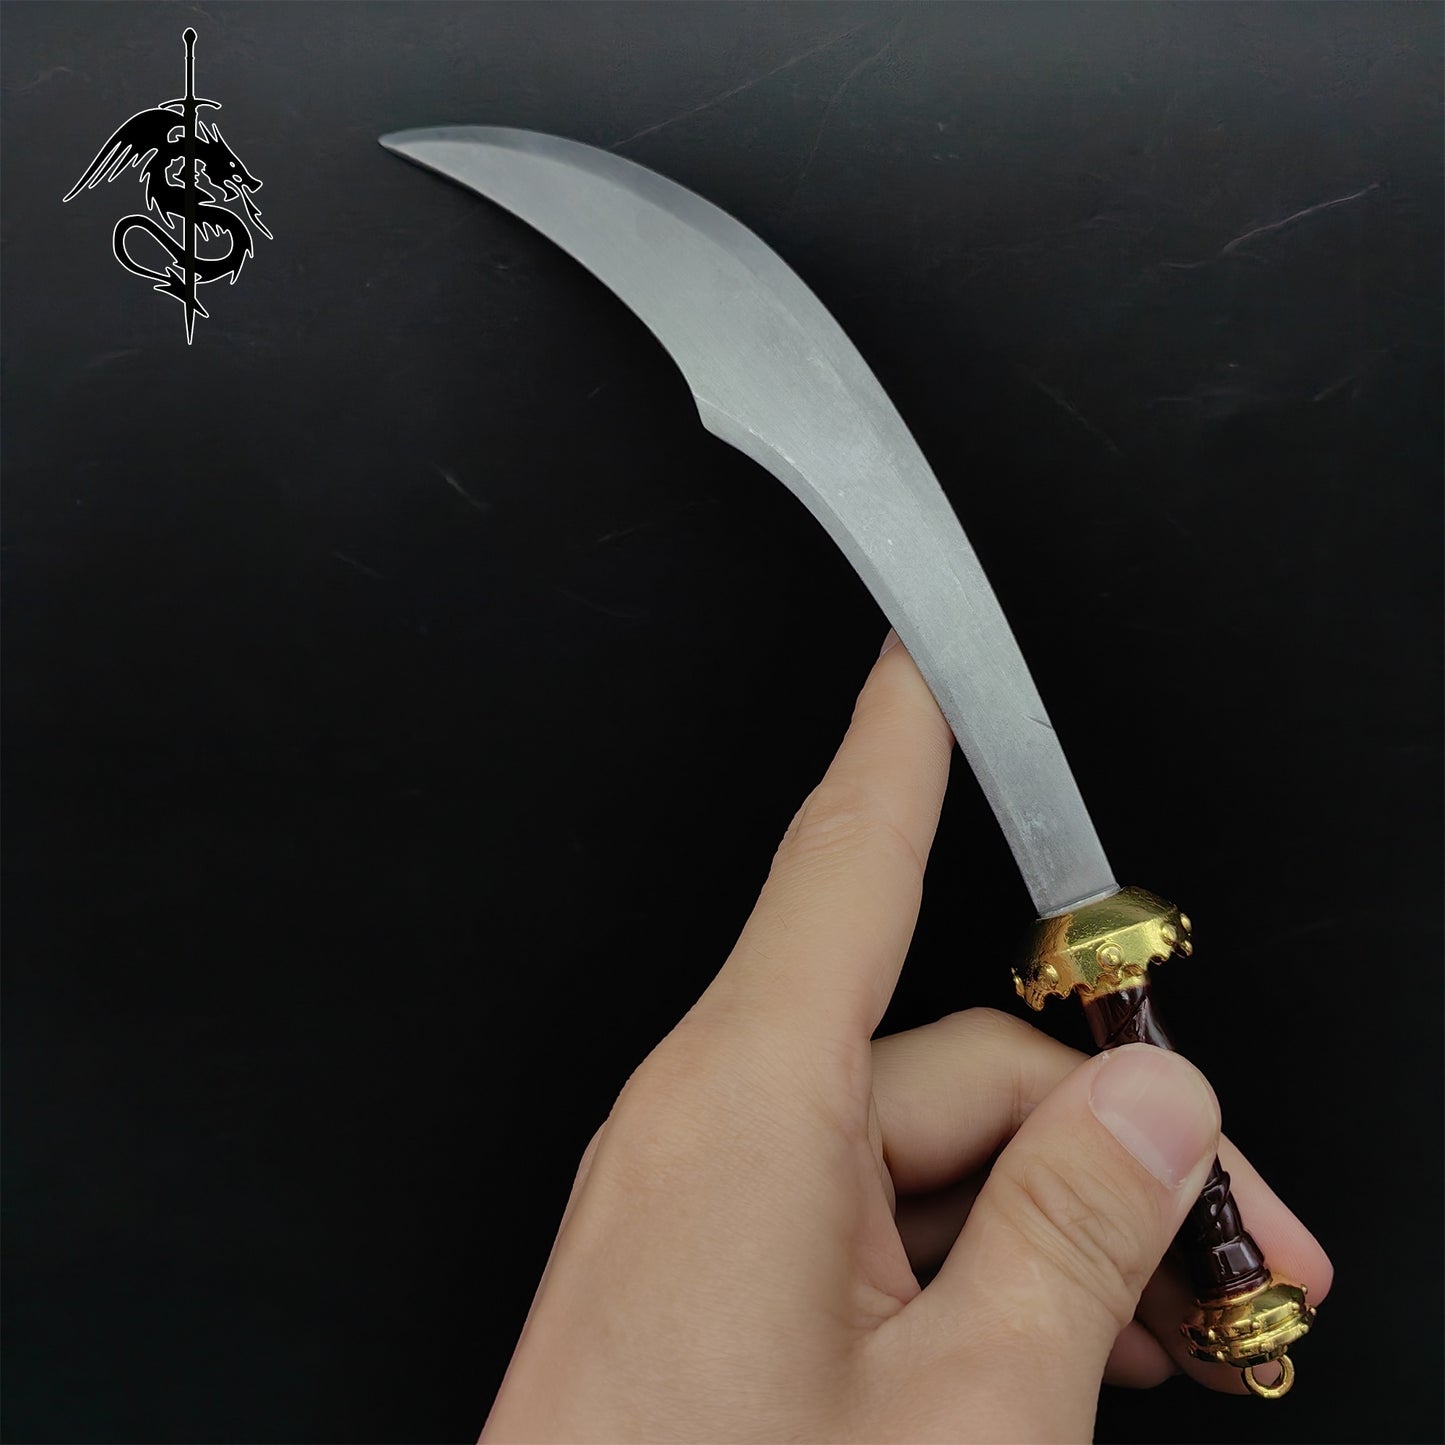 Skyrim Weapon Mini Swords 4 In 1 Gift Box